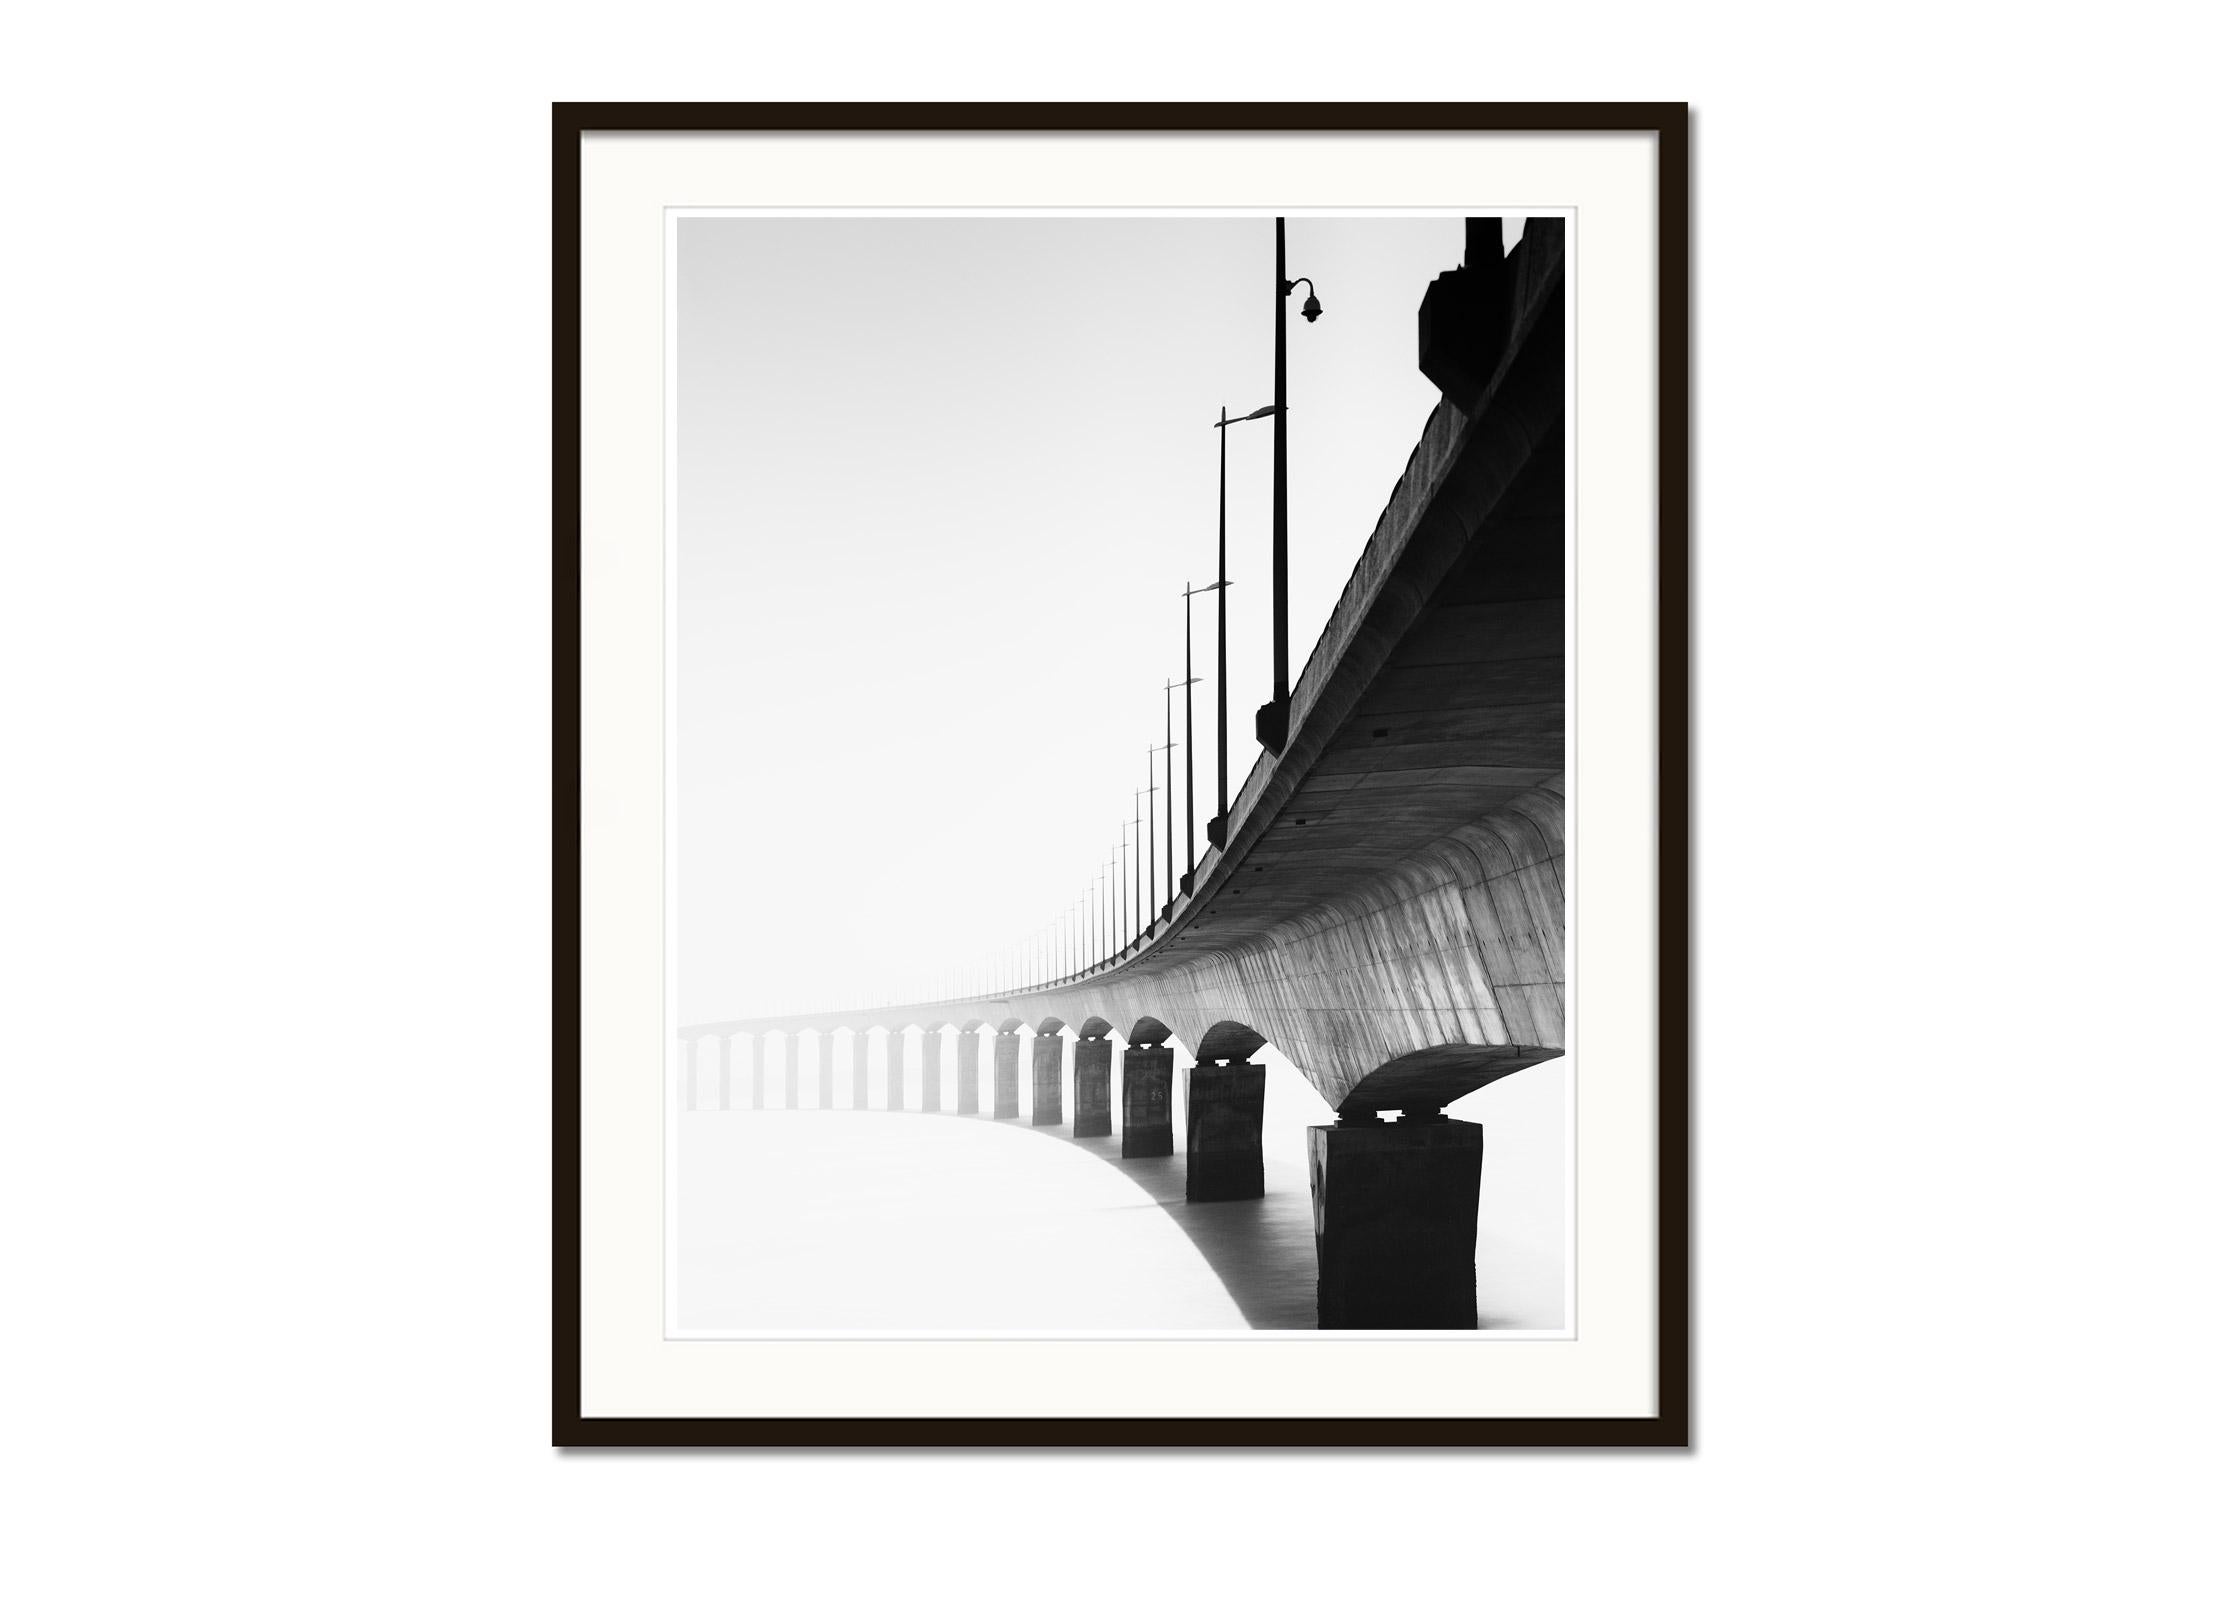 Pont de Ile de Re bridge France black white fine art cityscape photography print - Gray Black and White Photograph by Gerald Berghammer